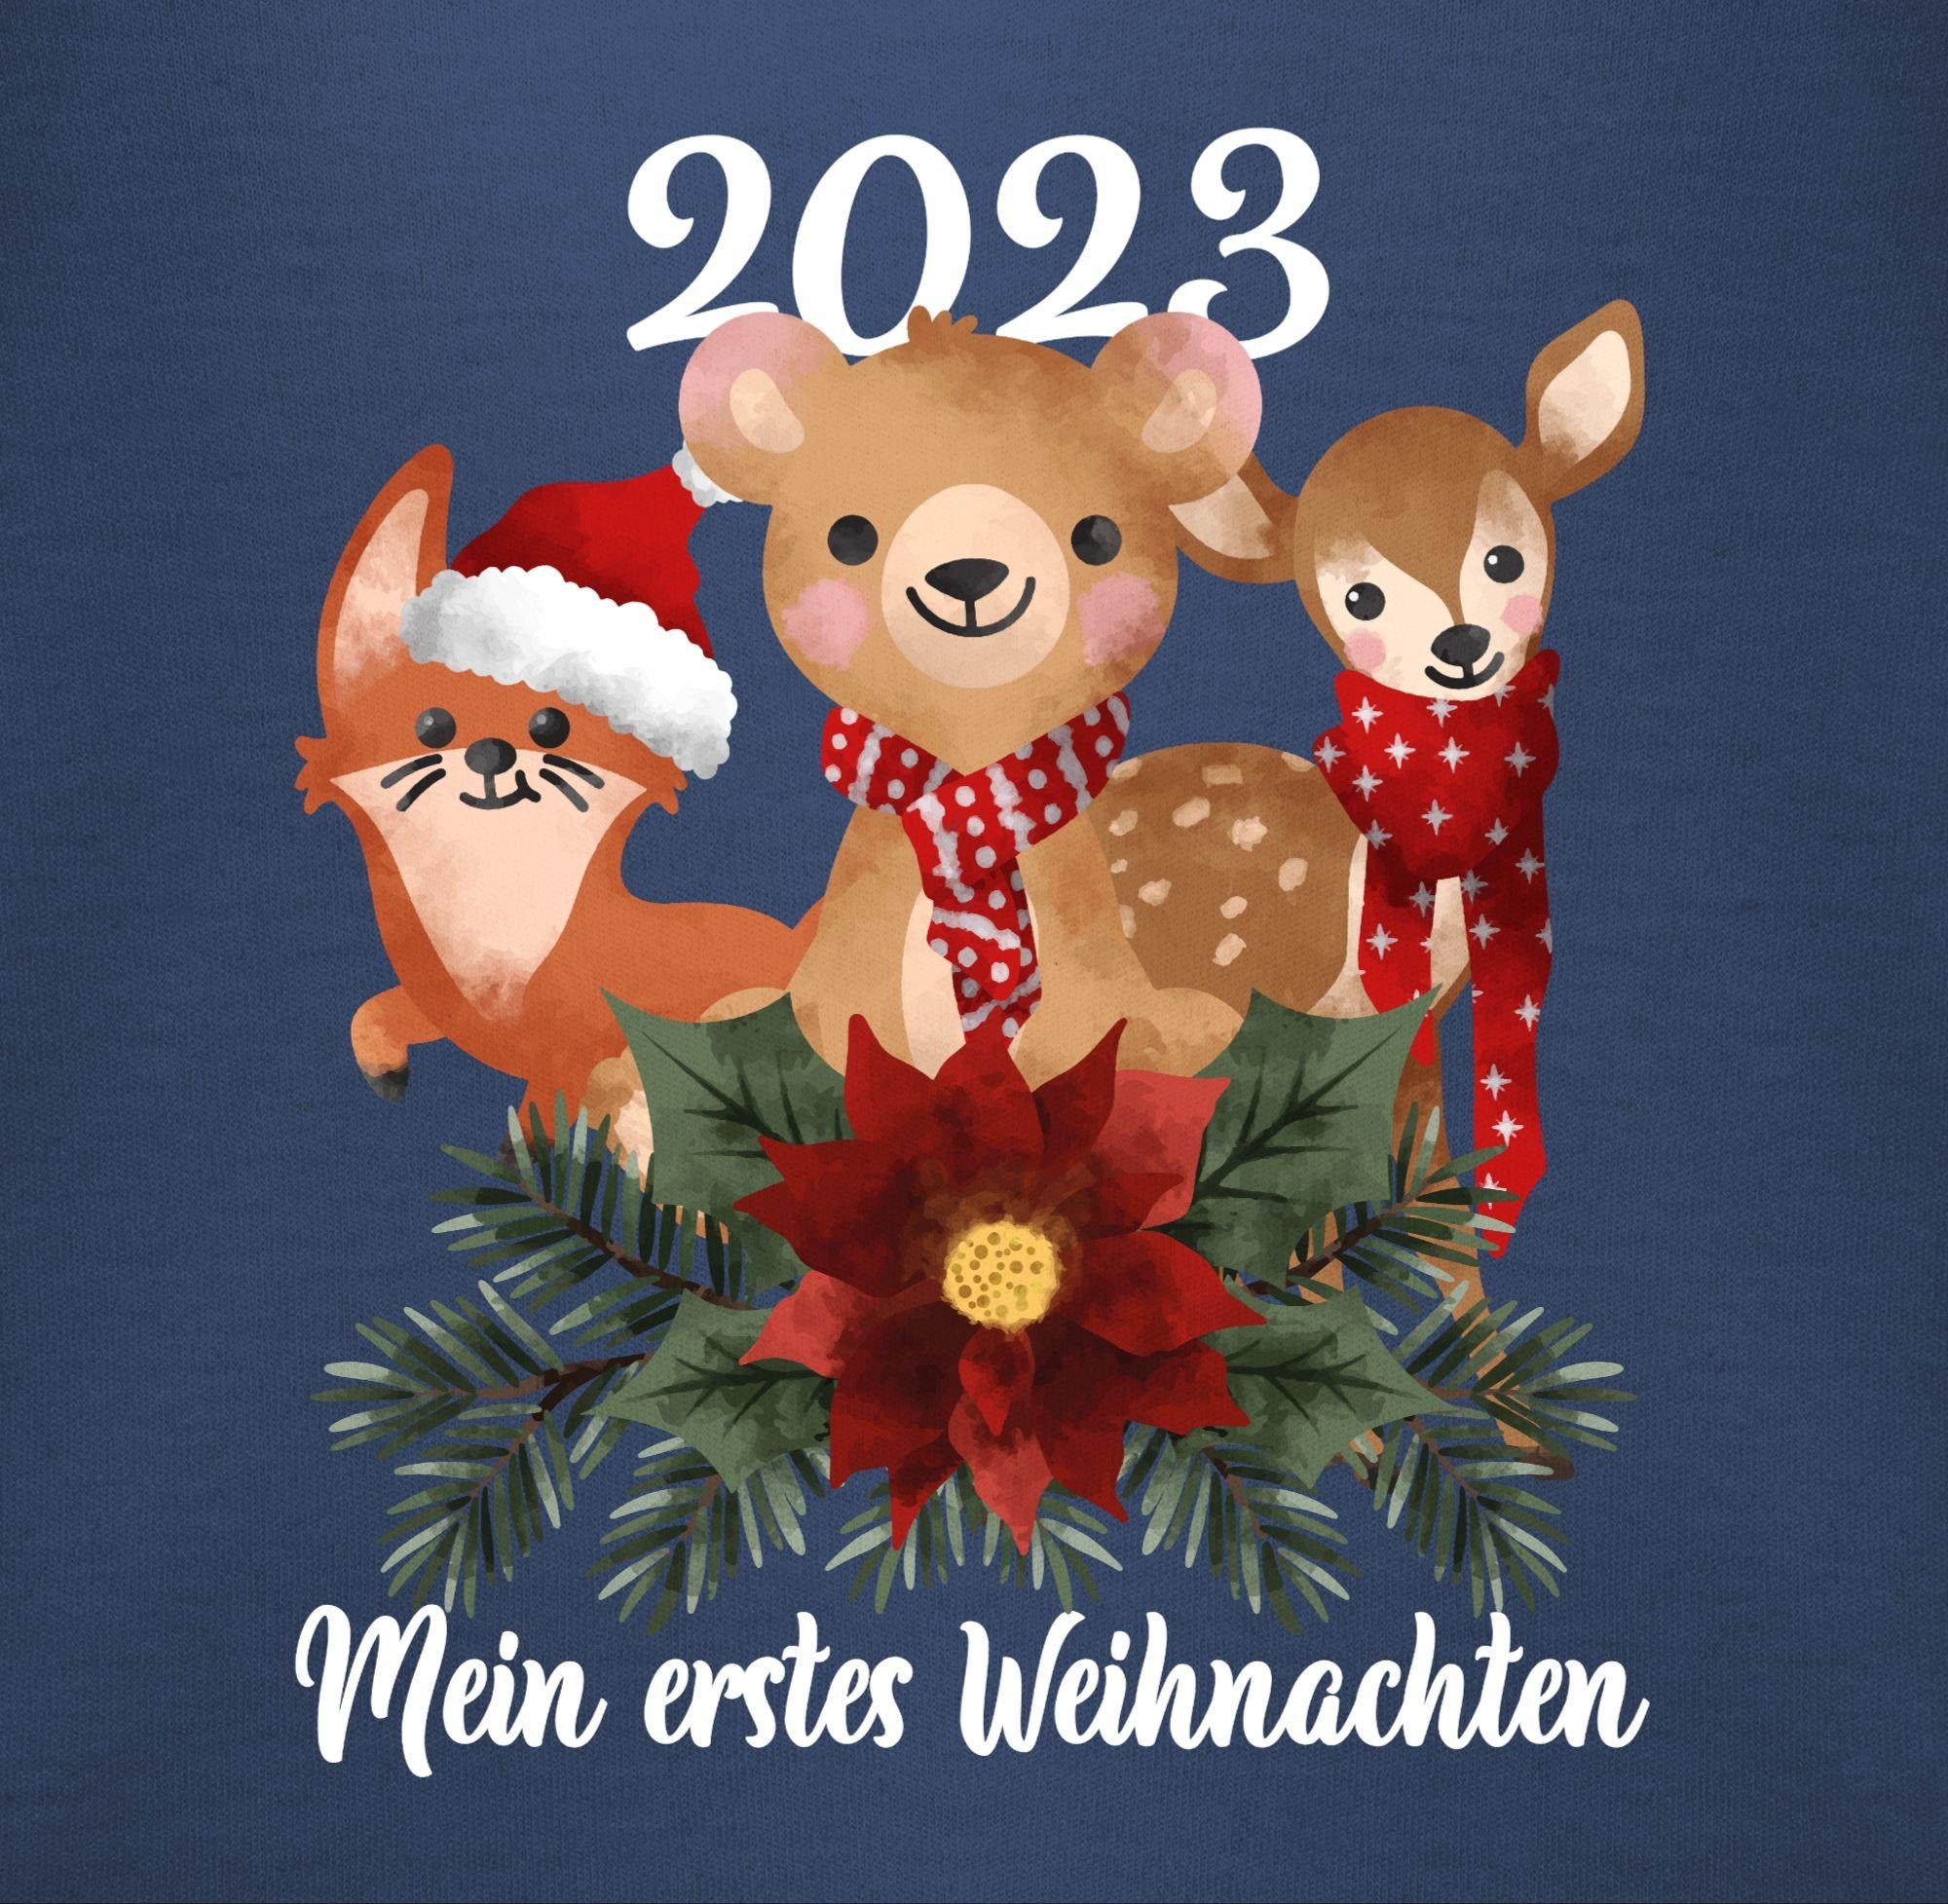 Shirtracer - süßen Navy Tieren Weihnachten 2023 weiß Weihnachten mit Blau Baby Shirtbody Mein Kleidung erstes 1